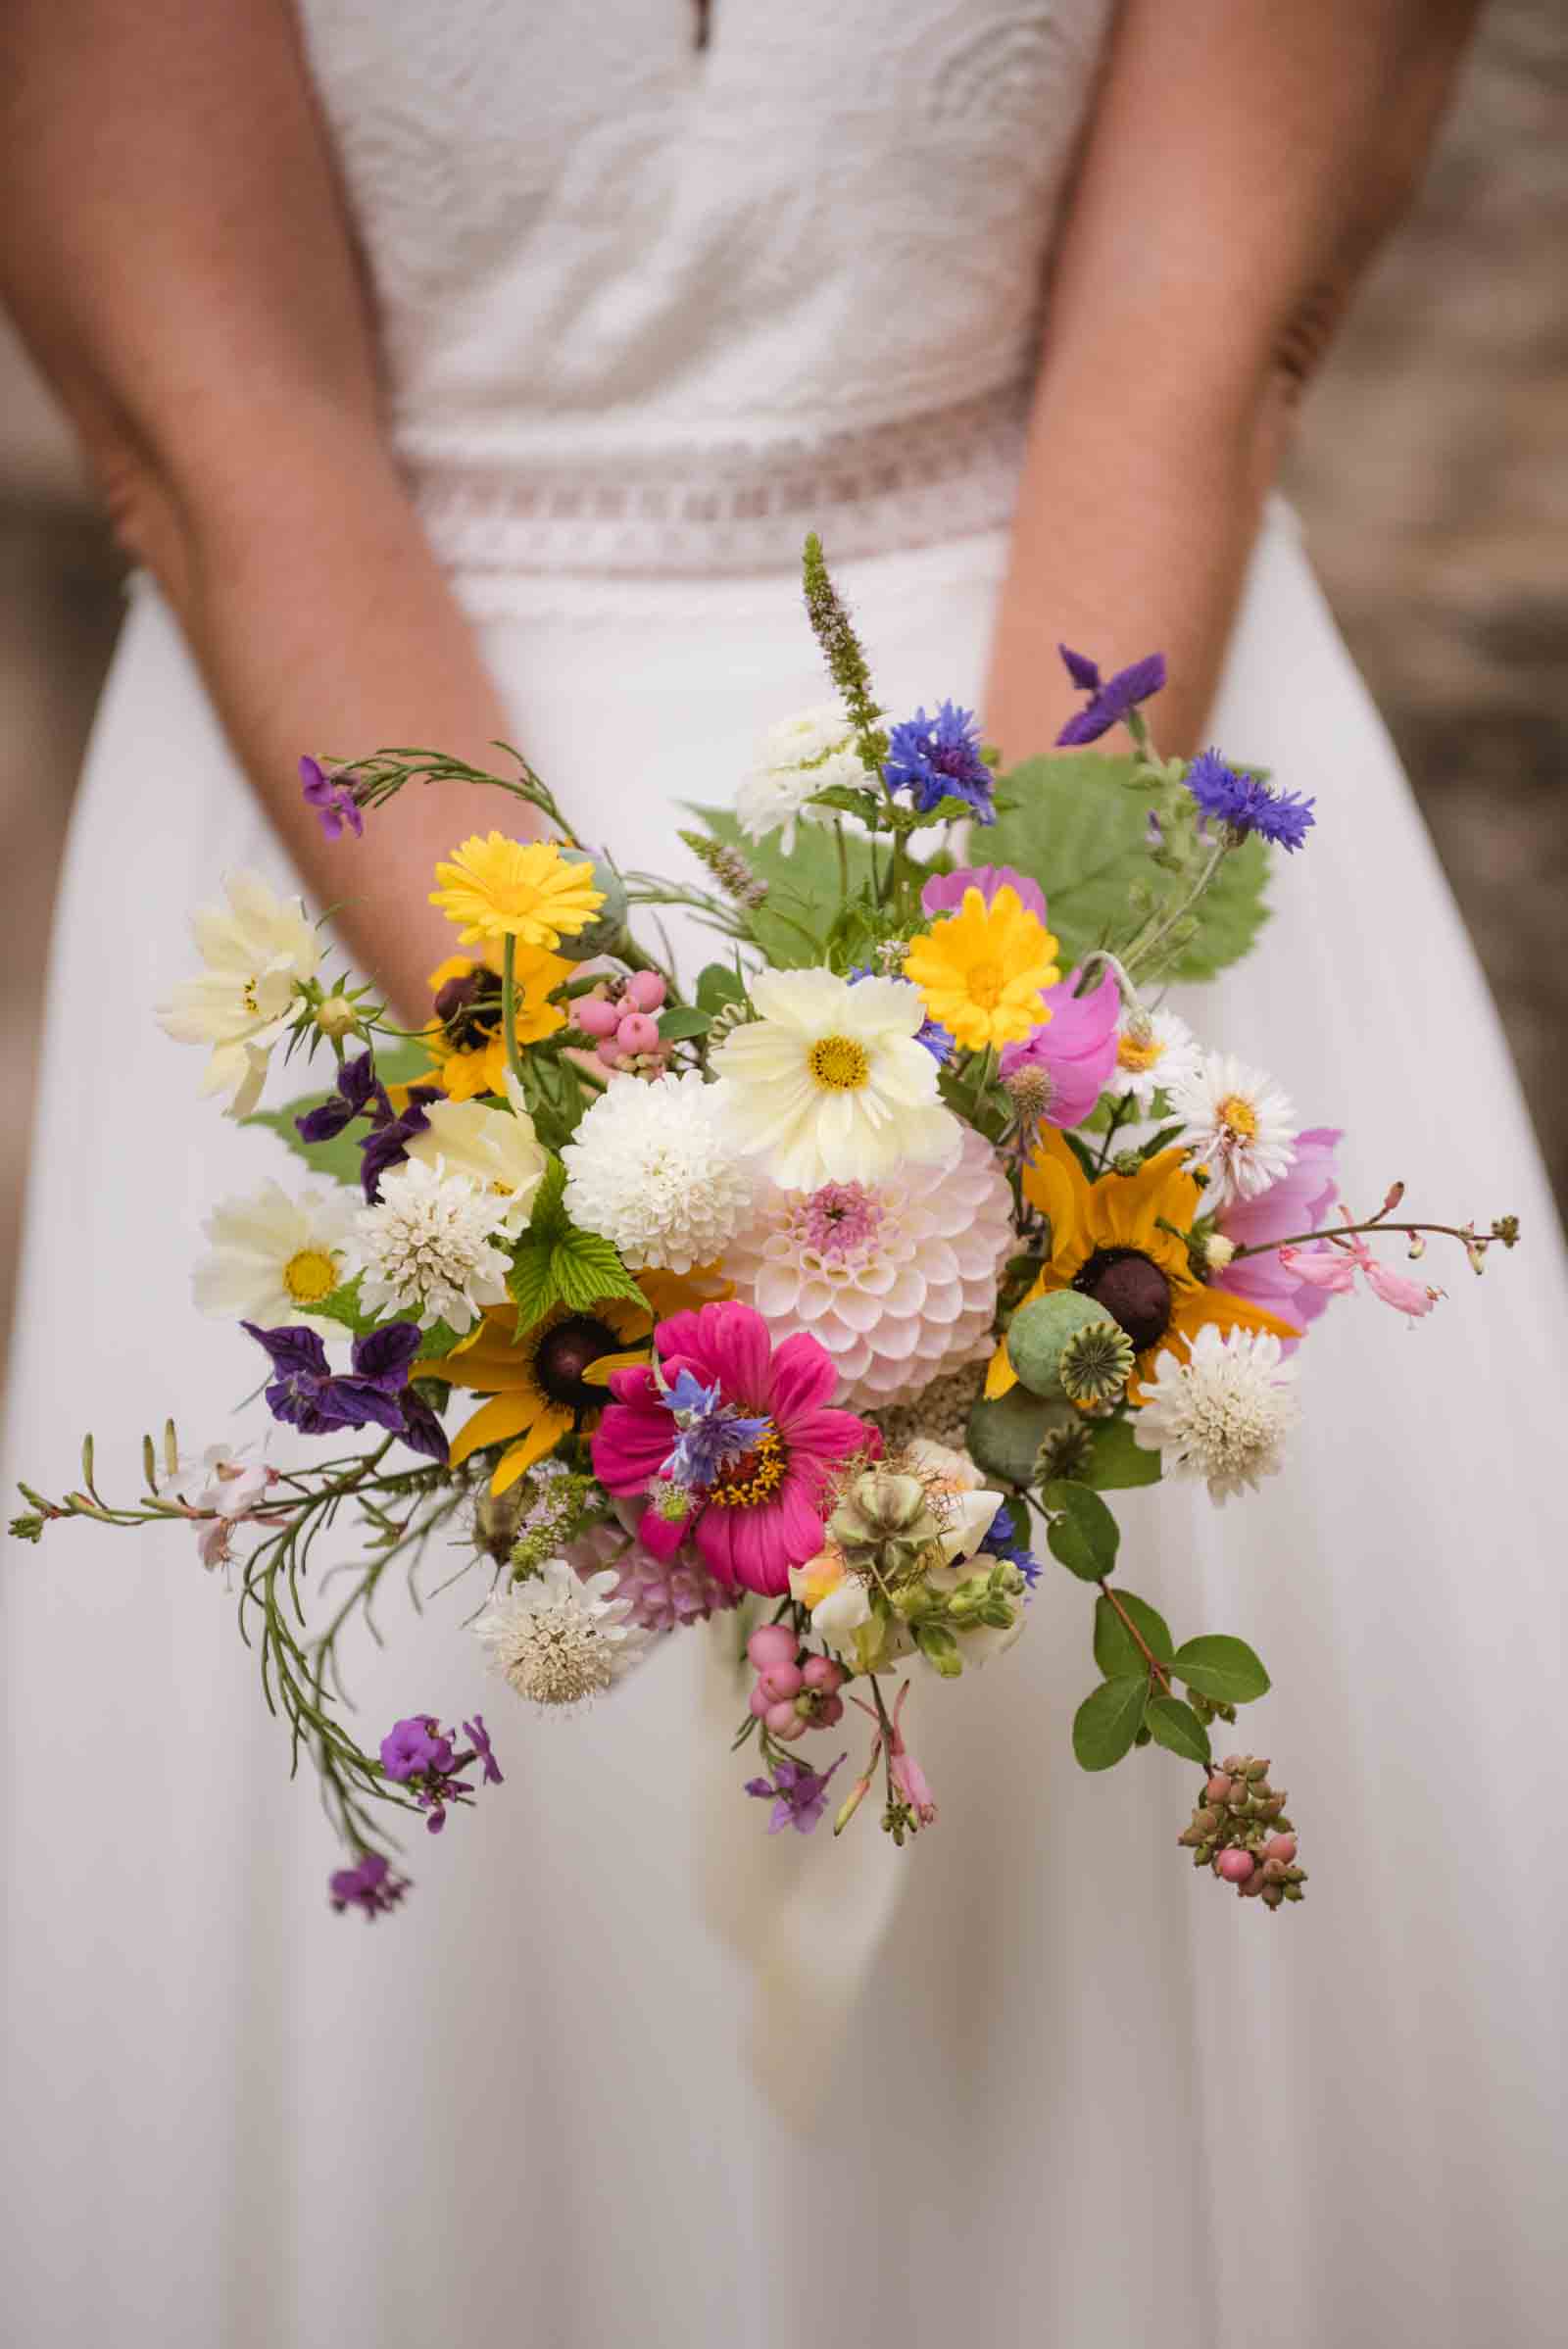 Le bouquet de la mariée haut en couleurs